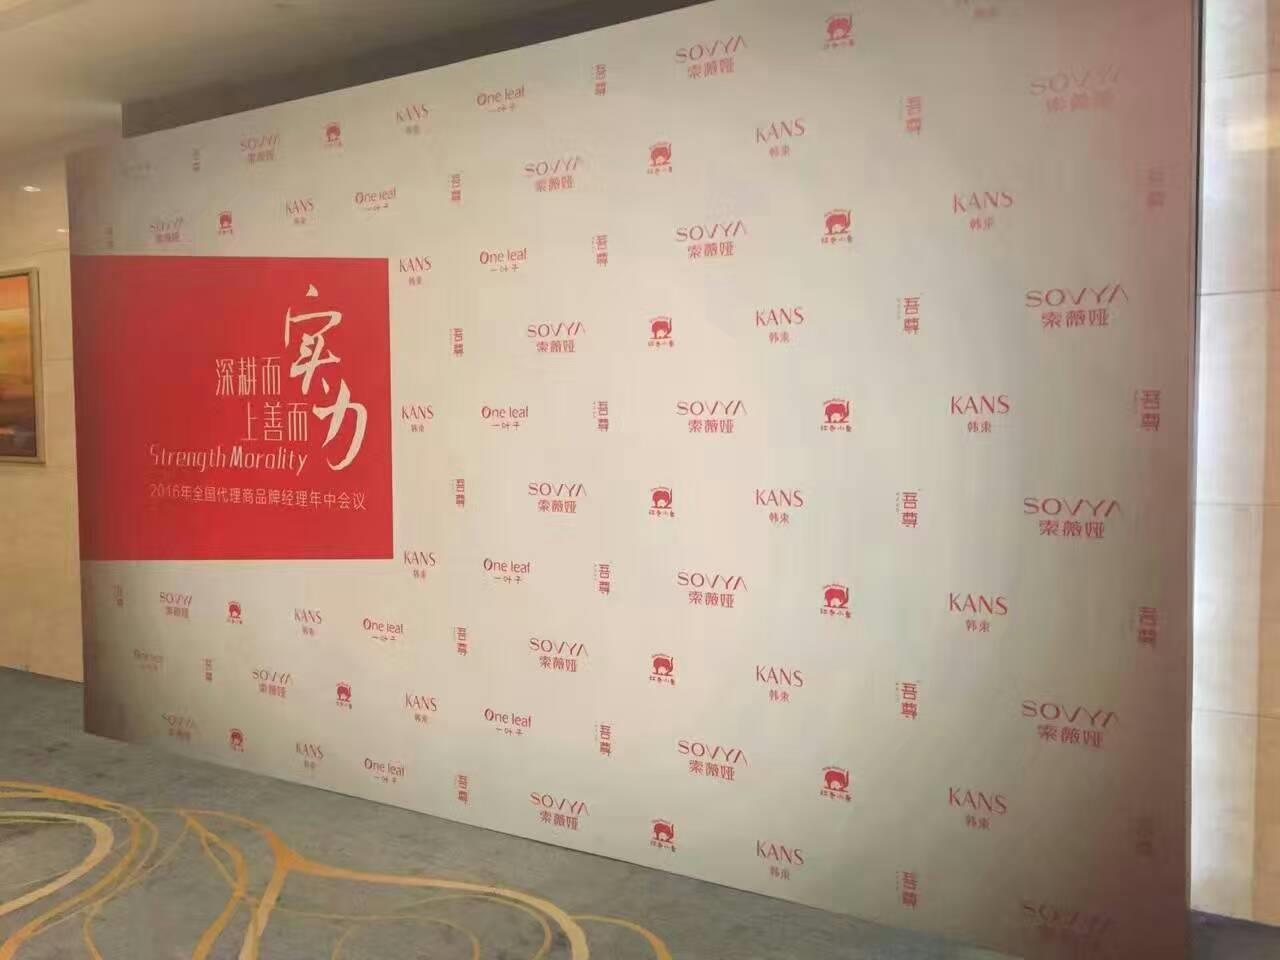 上海舞台搭建庆典策划 专业服务团队